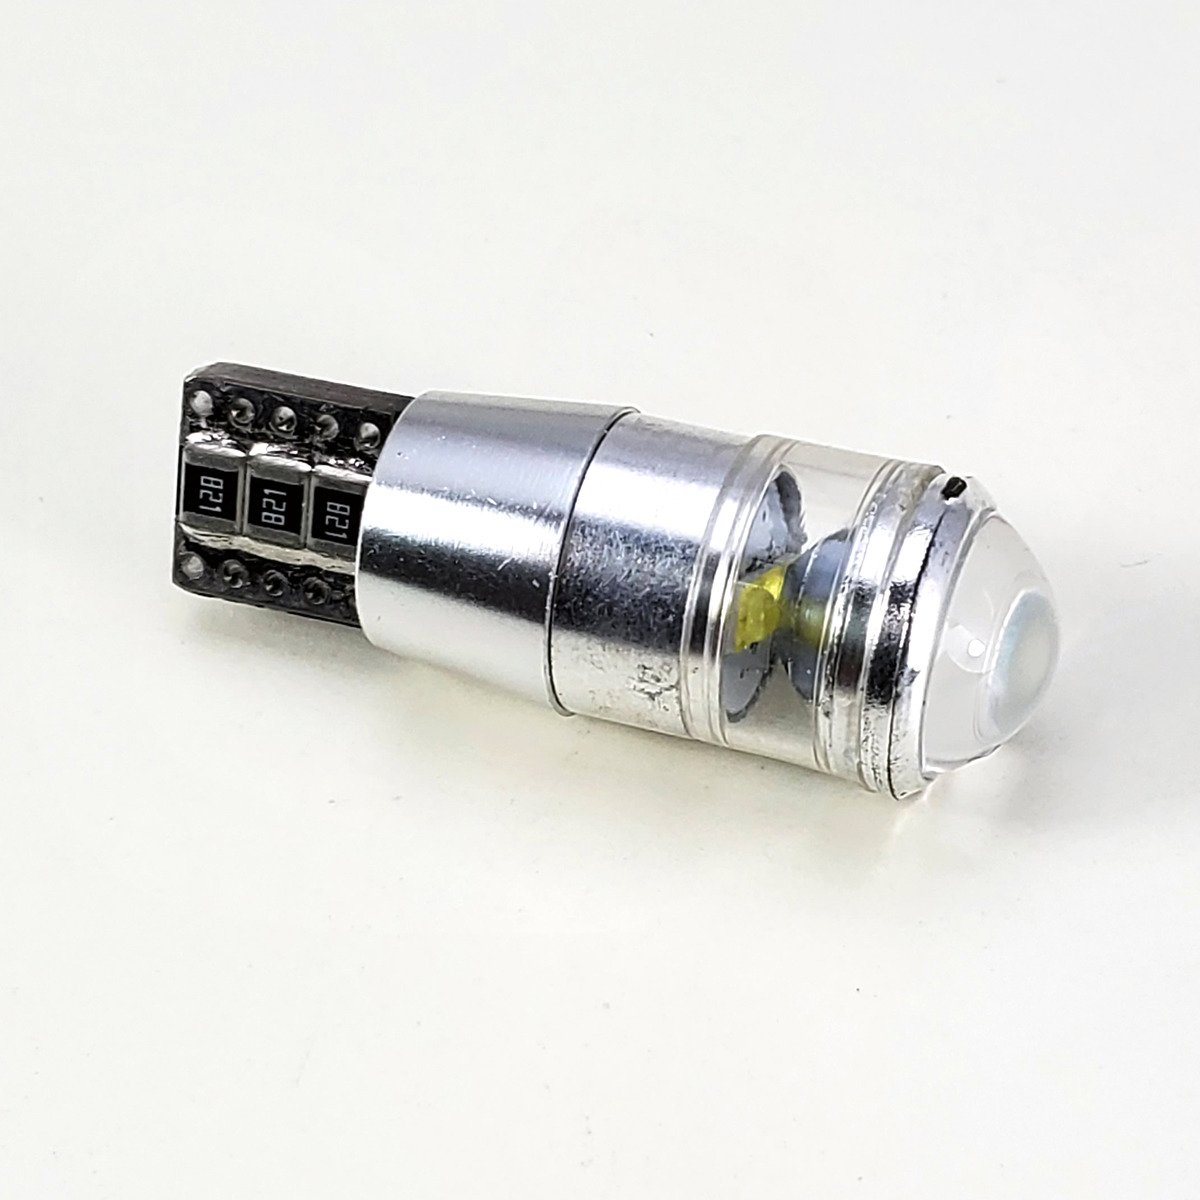 2x HQ Automotive W5W LED Bulb CanBus 3*5W High-Power Reflector